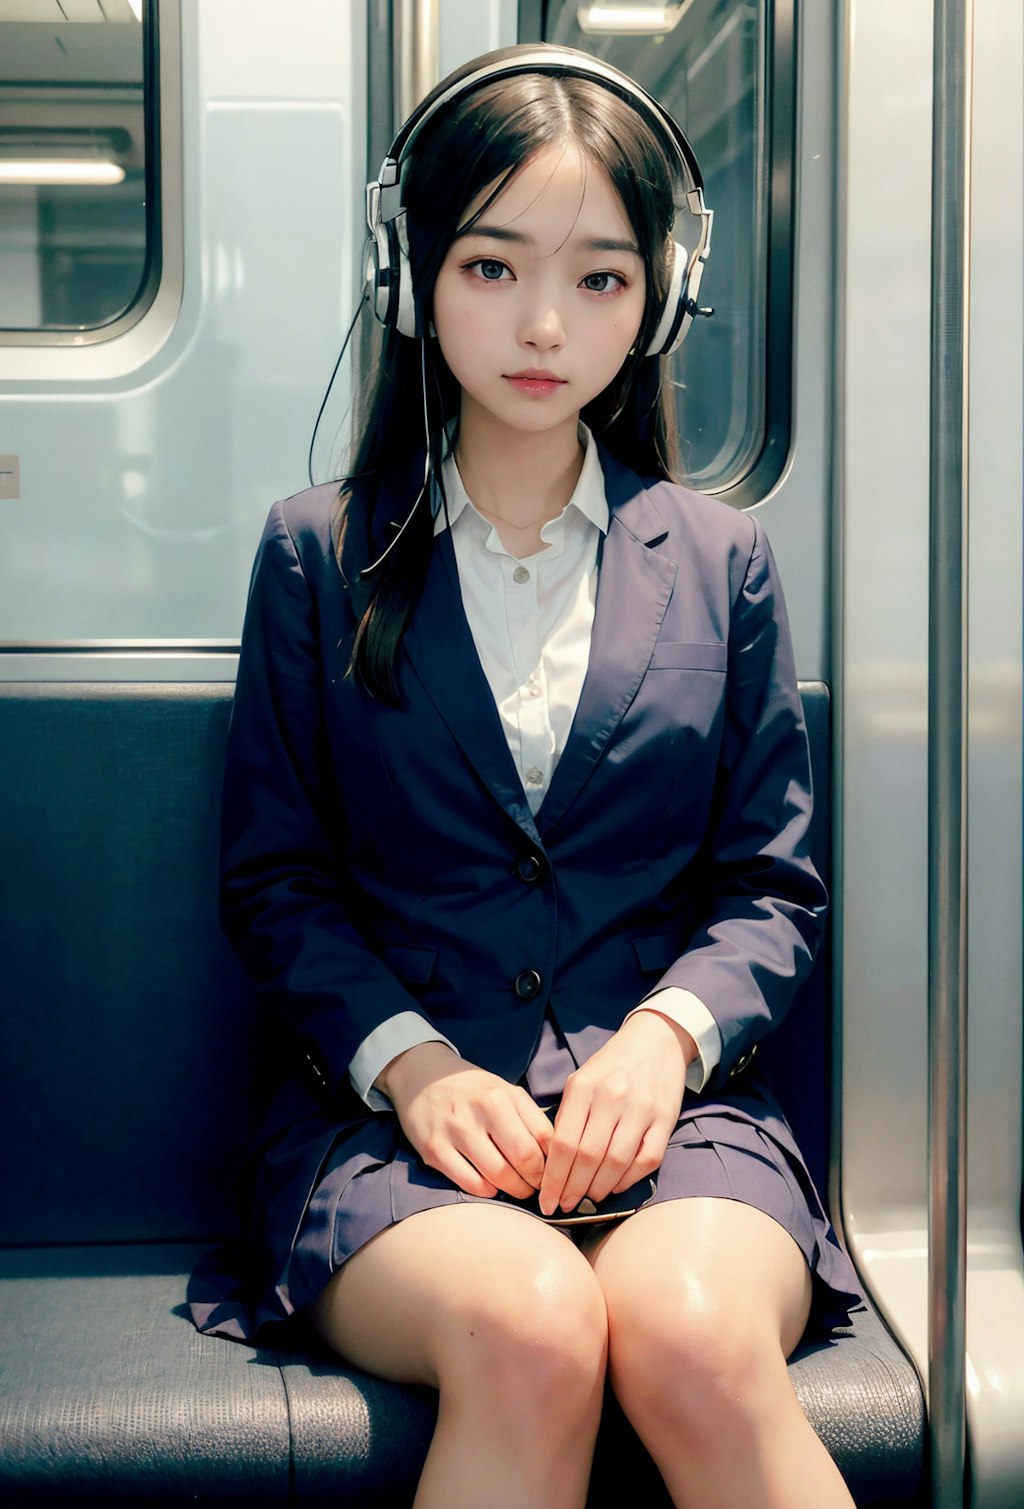 電車の中で音楽を聴く女子高生